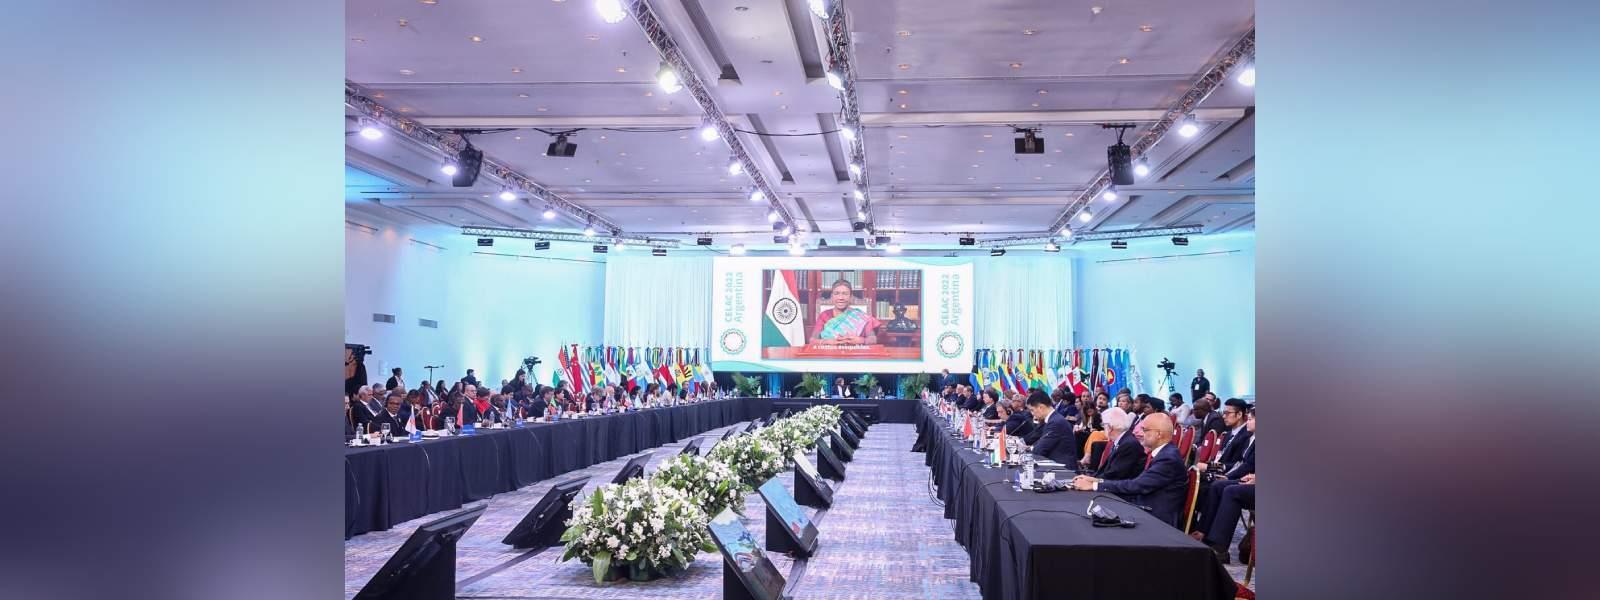 राष्ट्रपति श्रीमती द्रौपदी मुर्मू ने विशेष अतिथि के रूप में लैटिन अमेरिकी और कैरेबियाई देशों (सीईएलएसी) के समुदाय के 7वें शिखर सम्मेलन में वर्चुअल रूप से भाग लिया